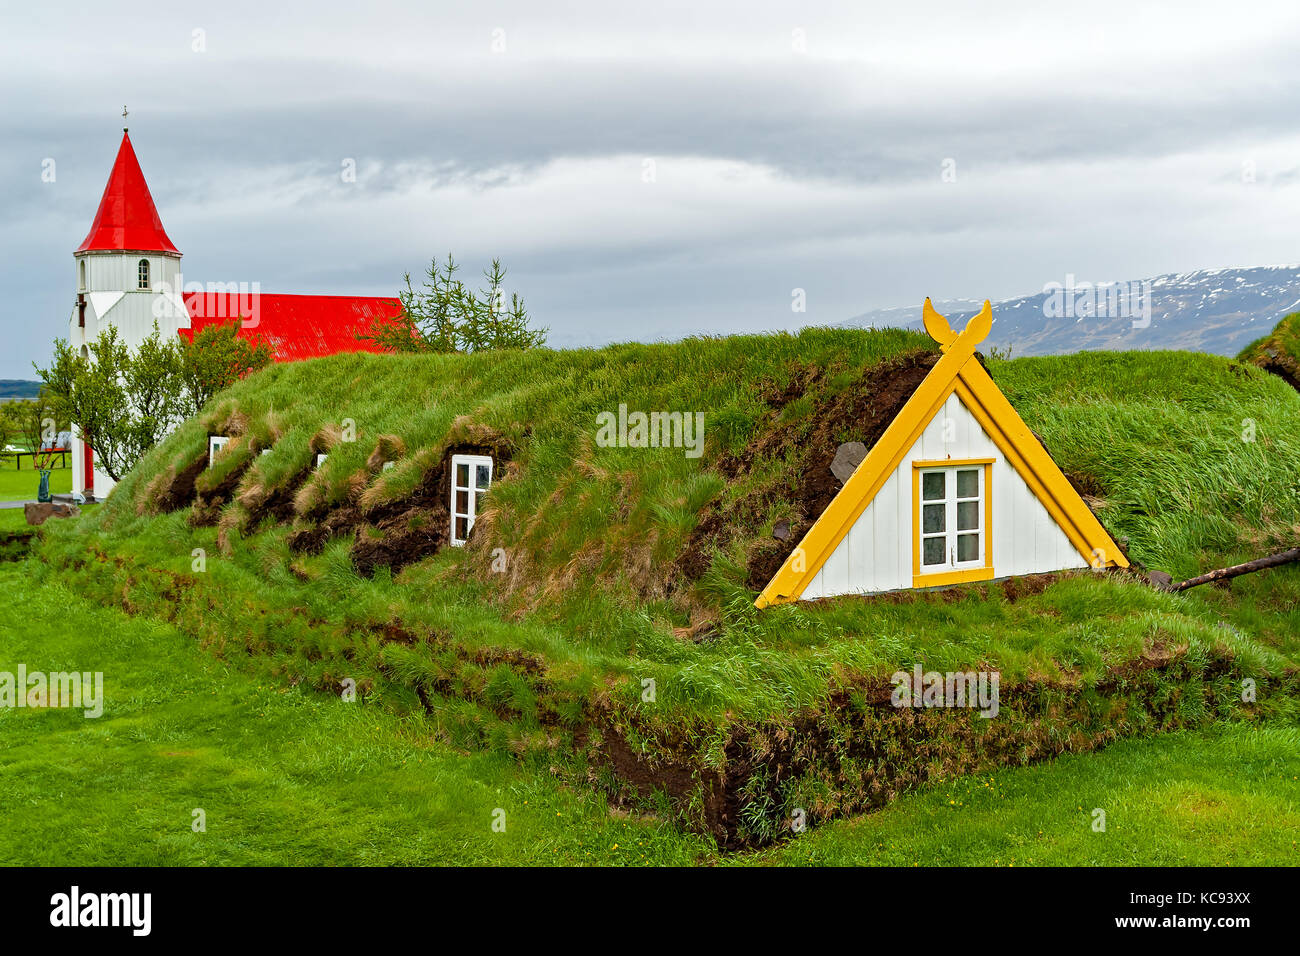 Gazon traditionnelles maisons de Glaumbaer - Islande Banque D'Images